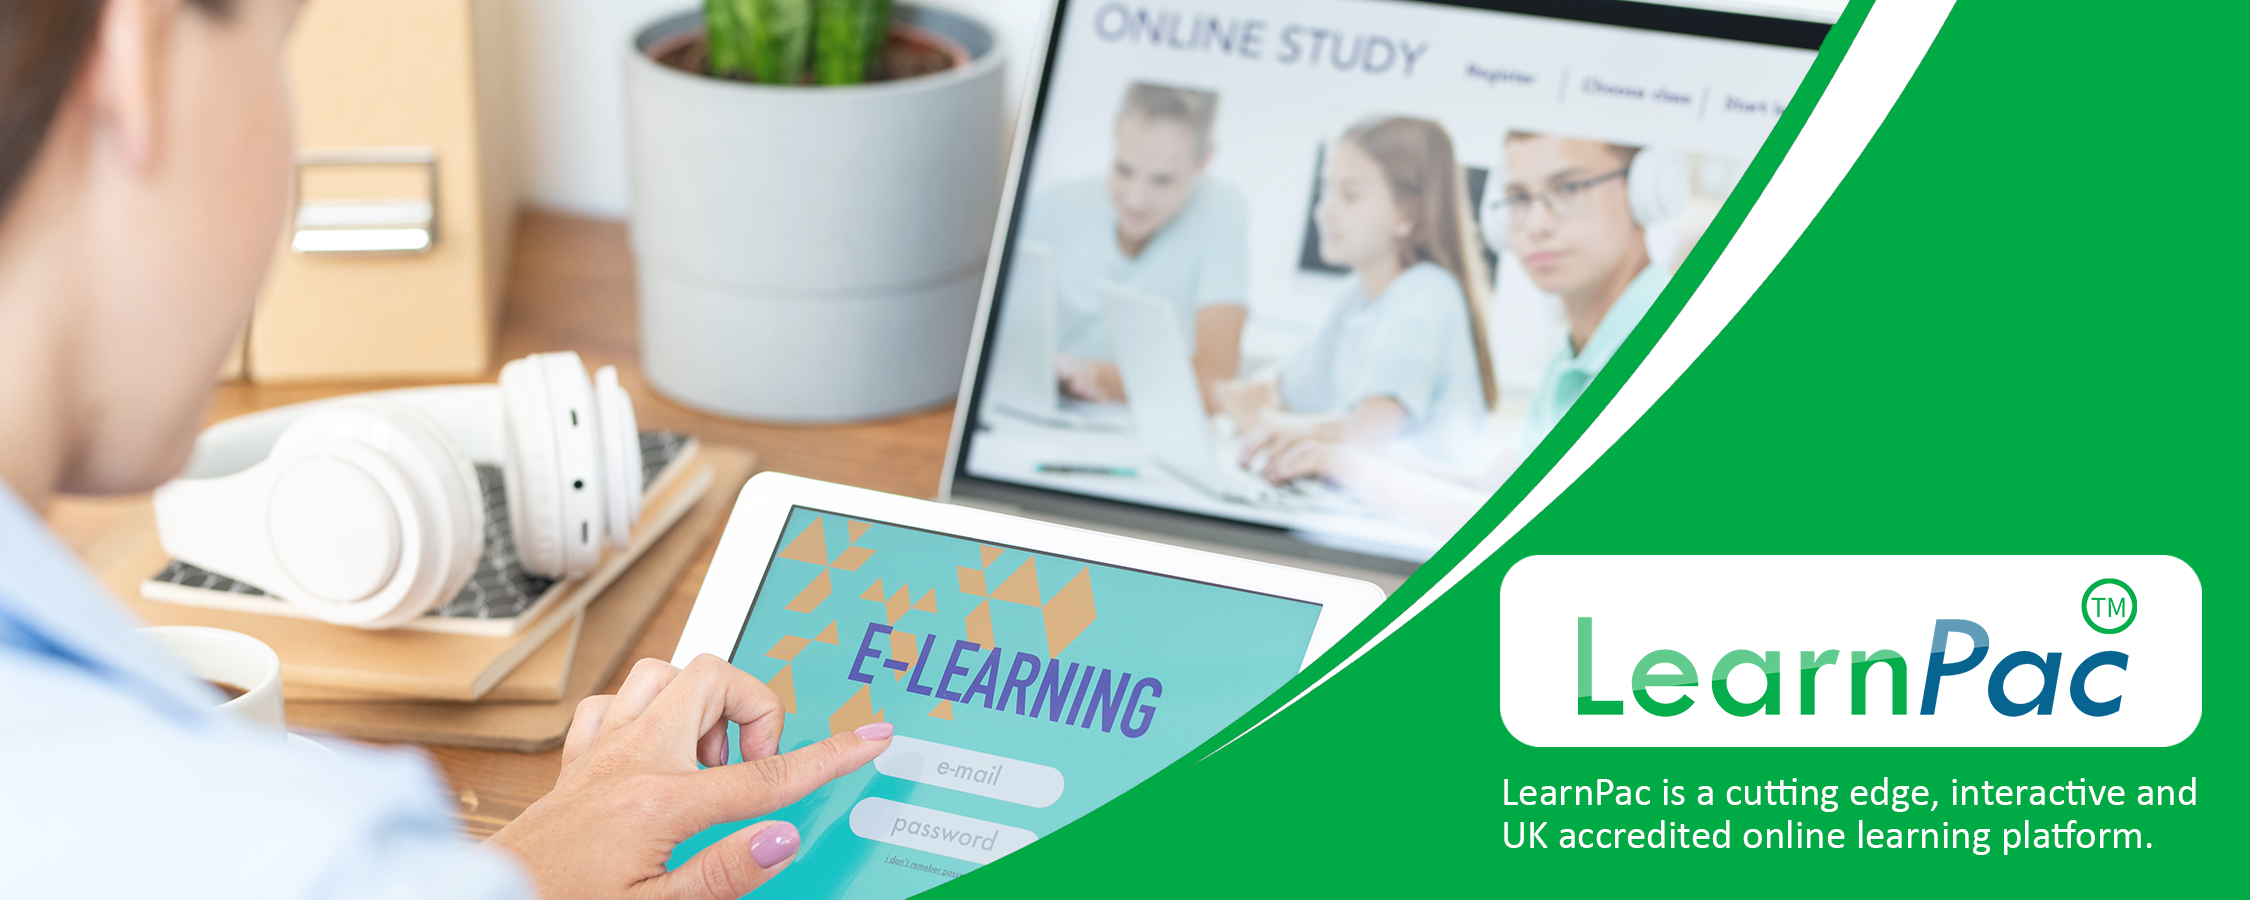 Mandatory Training for Locum Doctors - Online Learning Courses - E-Learning Courses - LearnPac Systems UK -